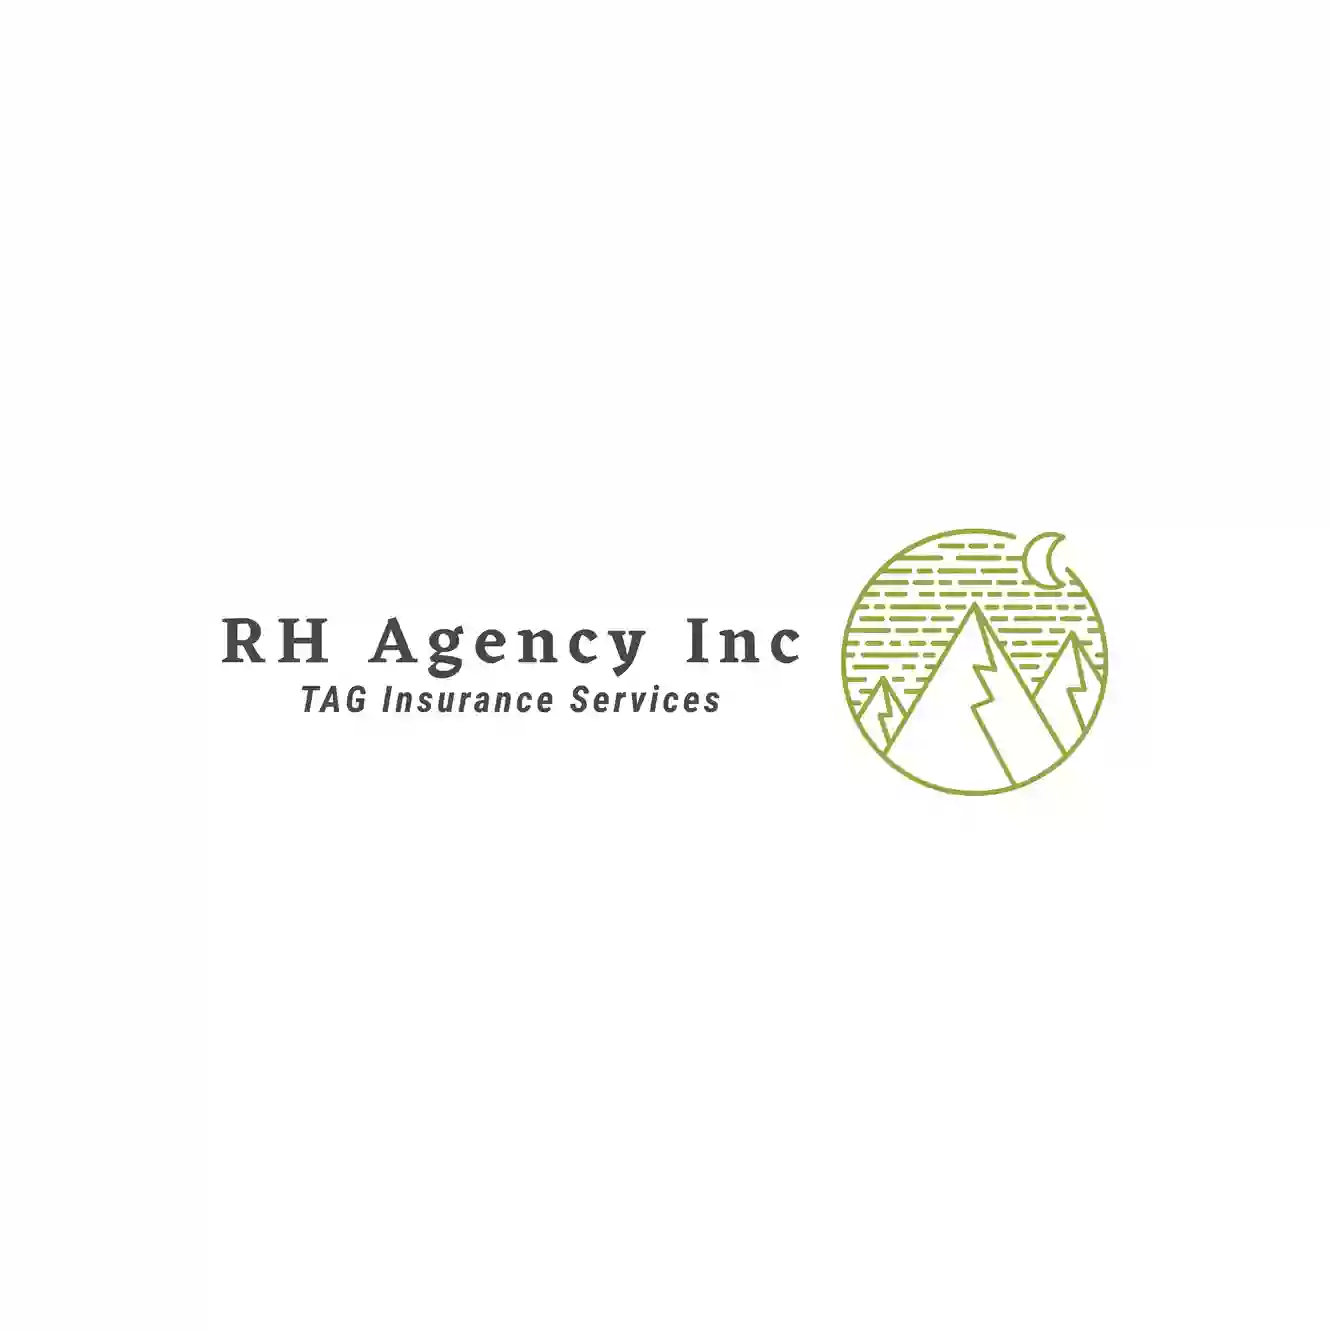 TAG-RH Agency Inc